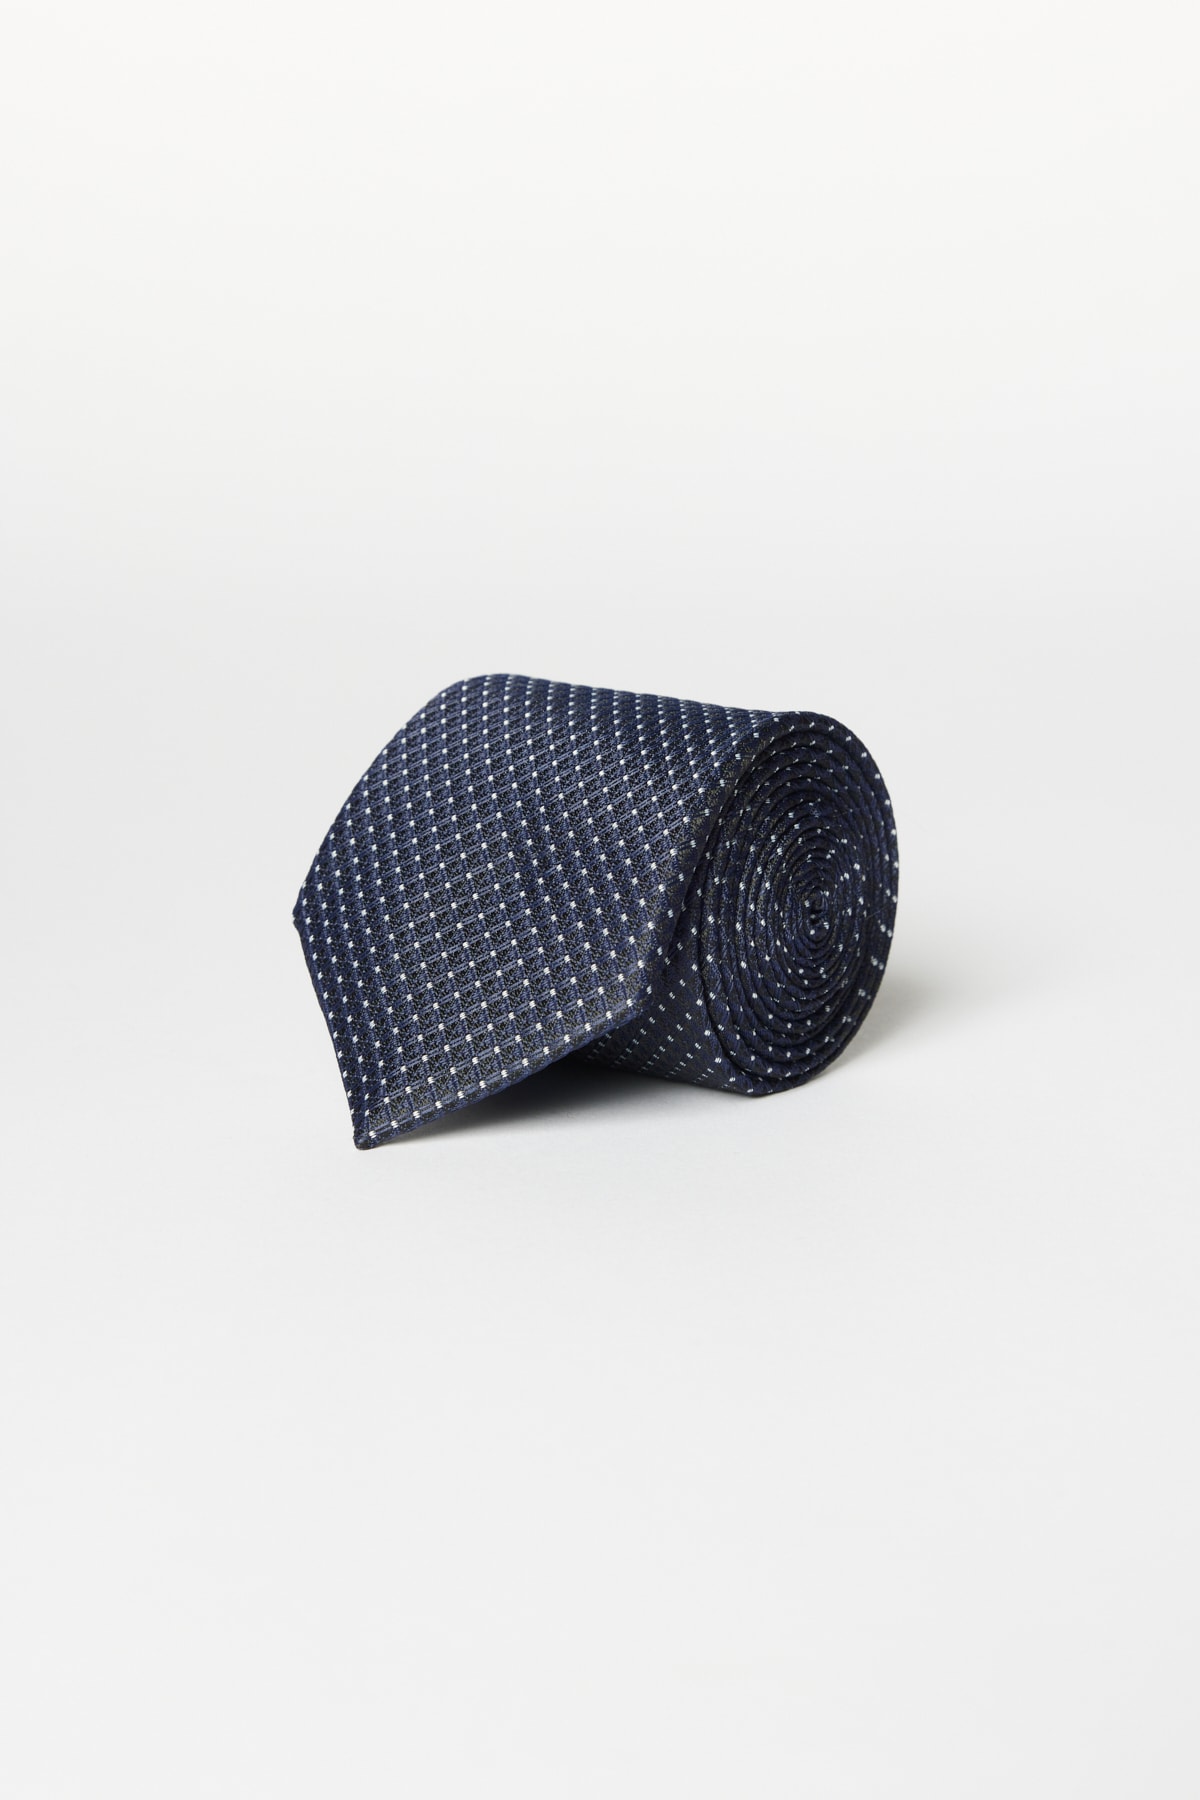 Levně ALTINYILDIZ CLASSICS Men's Navy Blue-White Patterned Tie